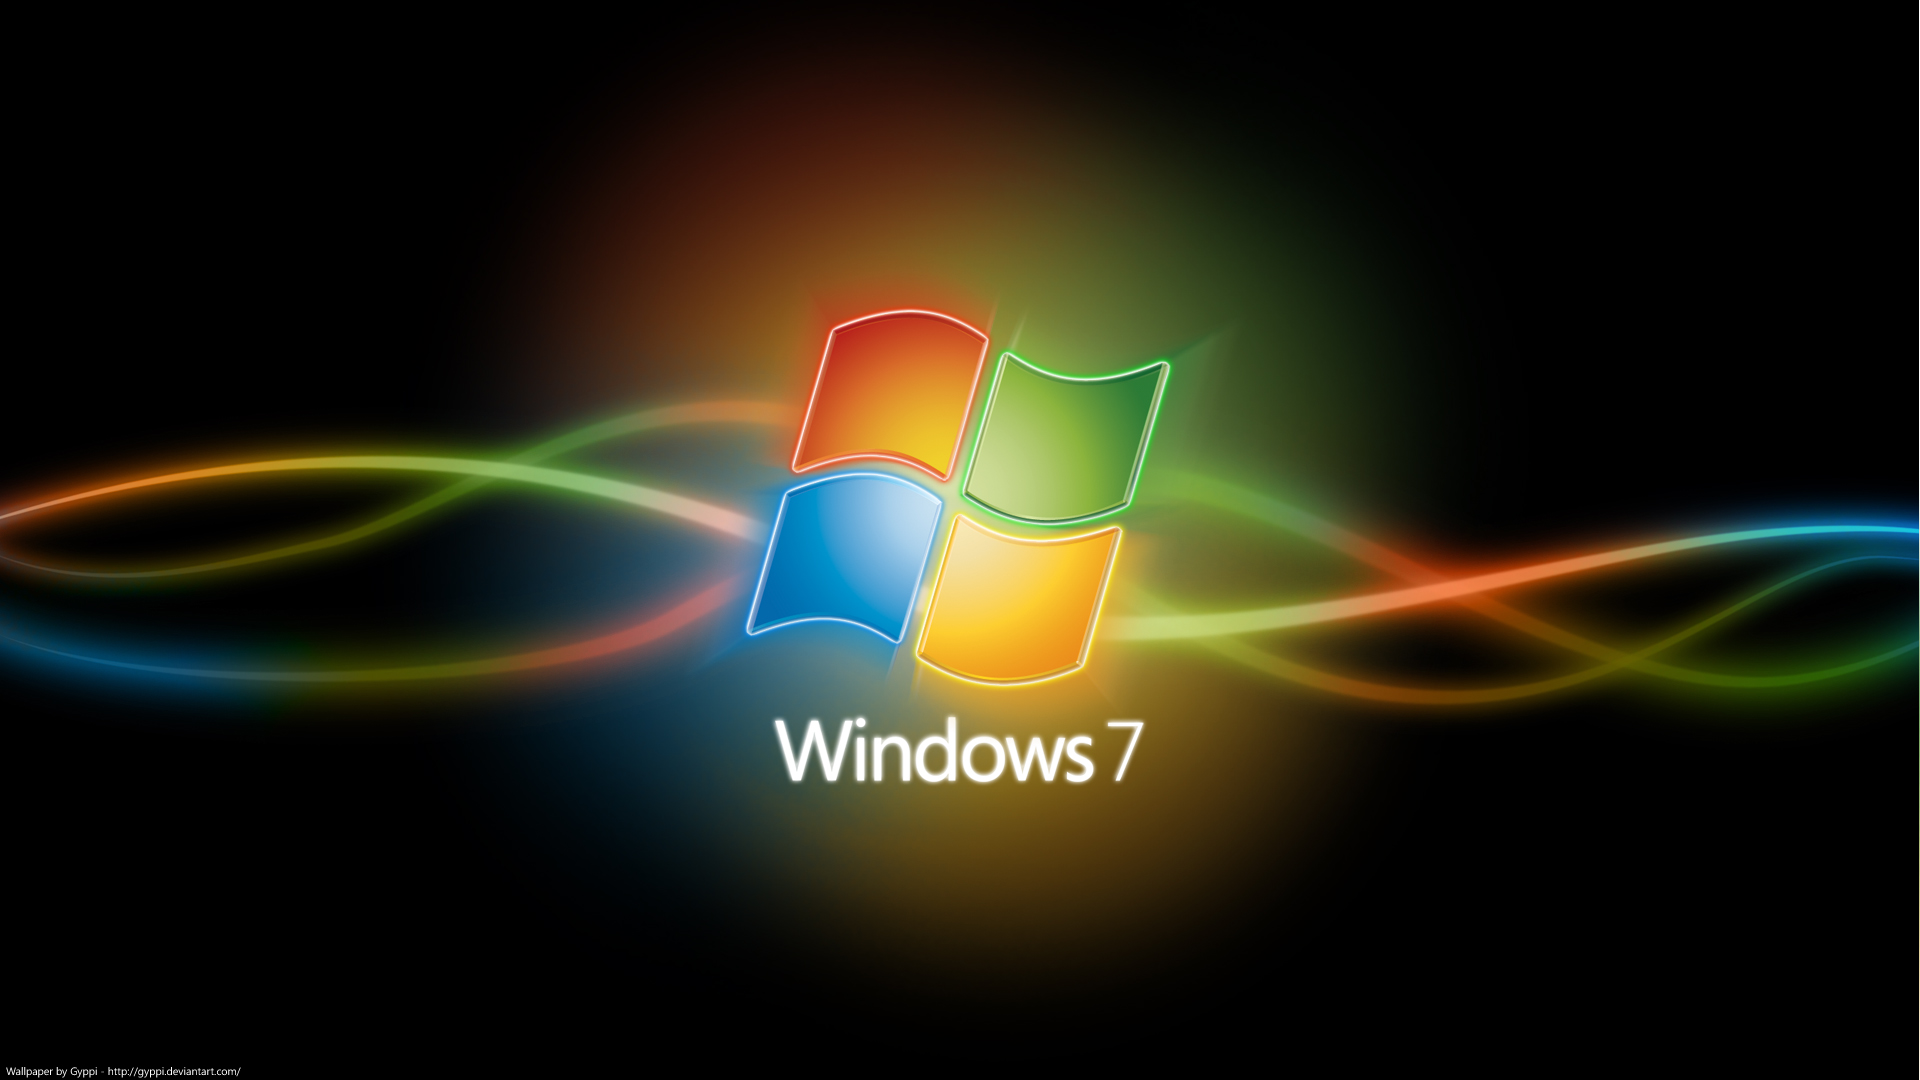 windows 7 wallpapers desktop win 7 background colors